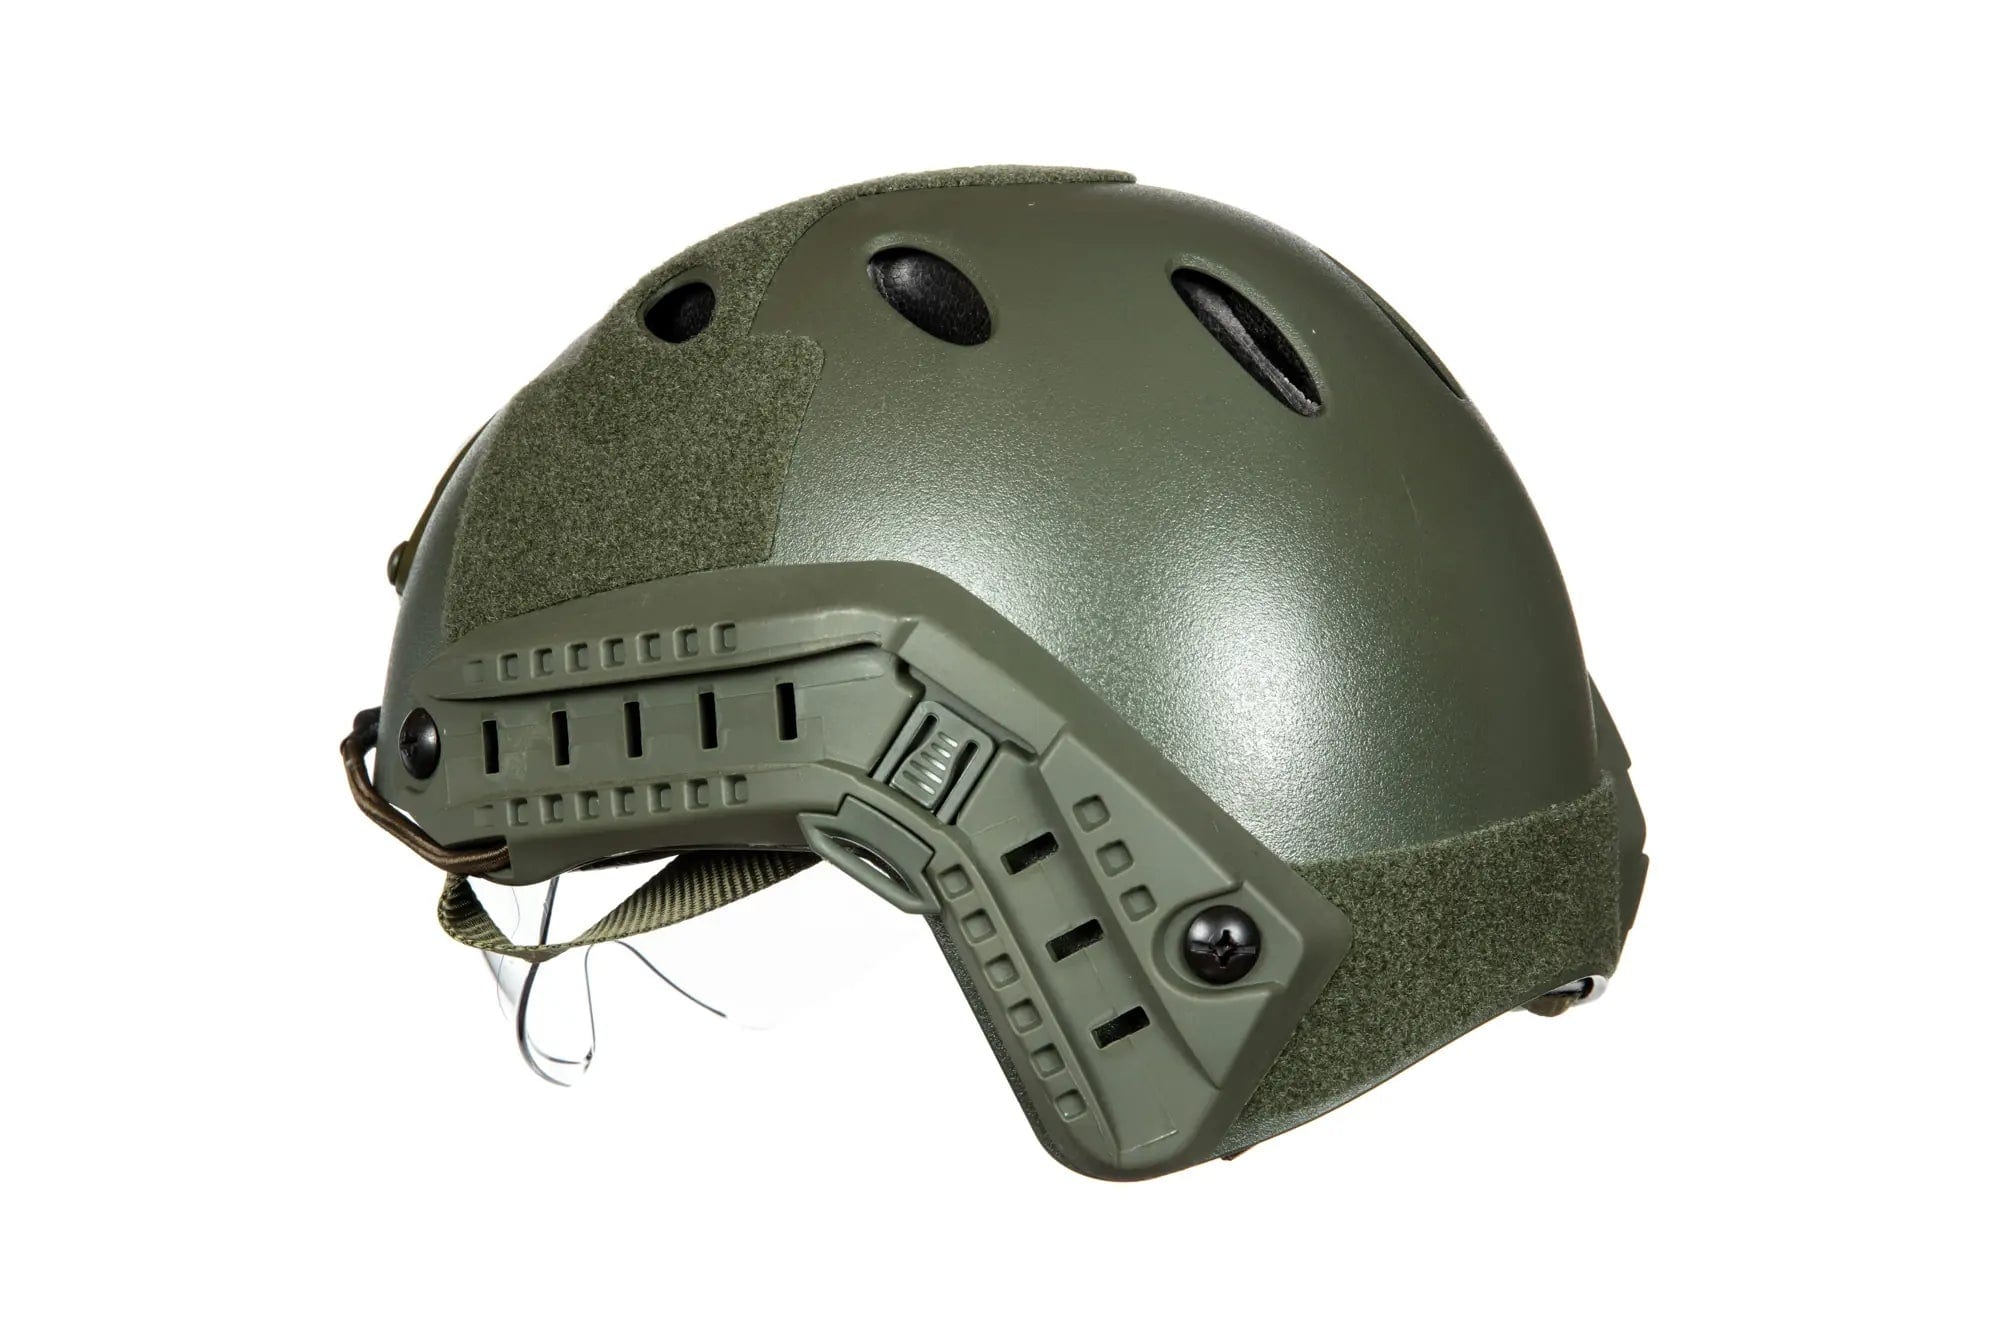 X-Shield PJ-Helm-Replik mit Brille - Olive